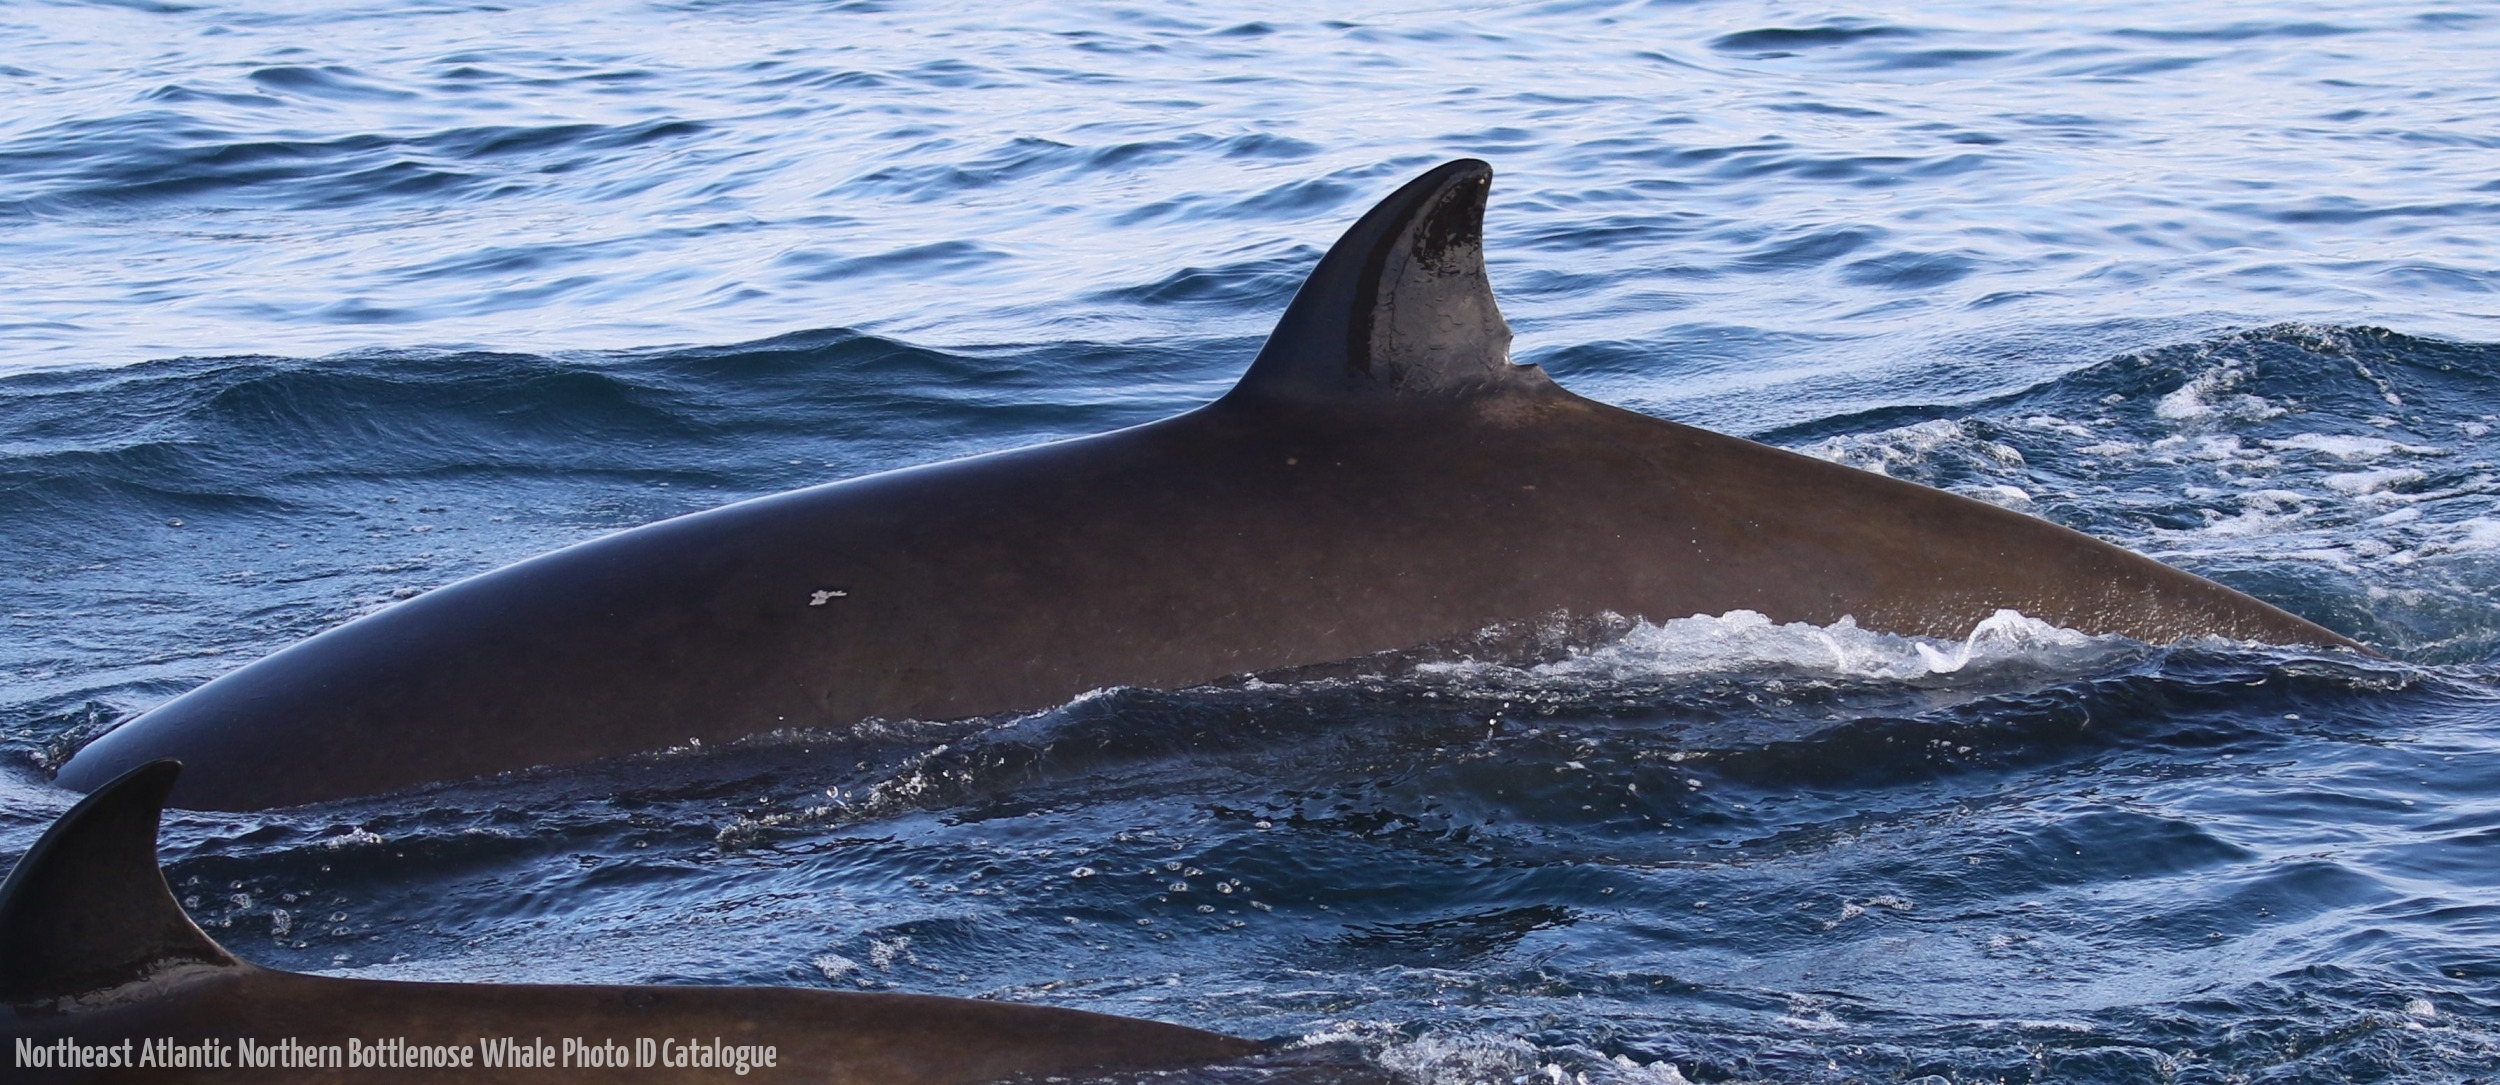 Whale ID: 0130,  Date taken: 21-06-2016,  Photographer: Eilidh Siegal